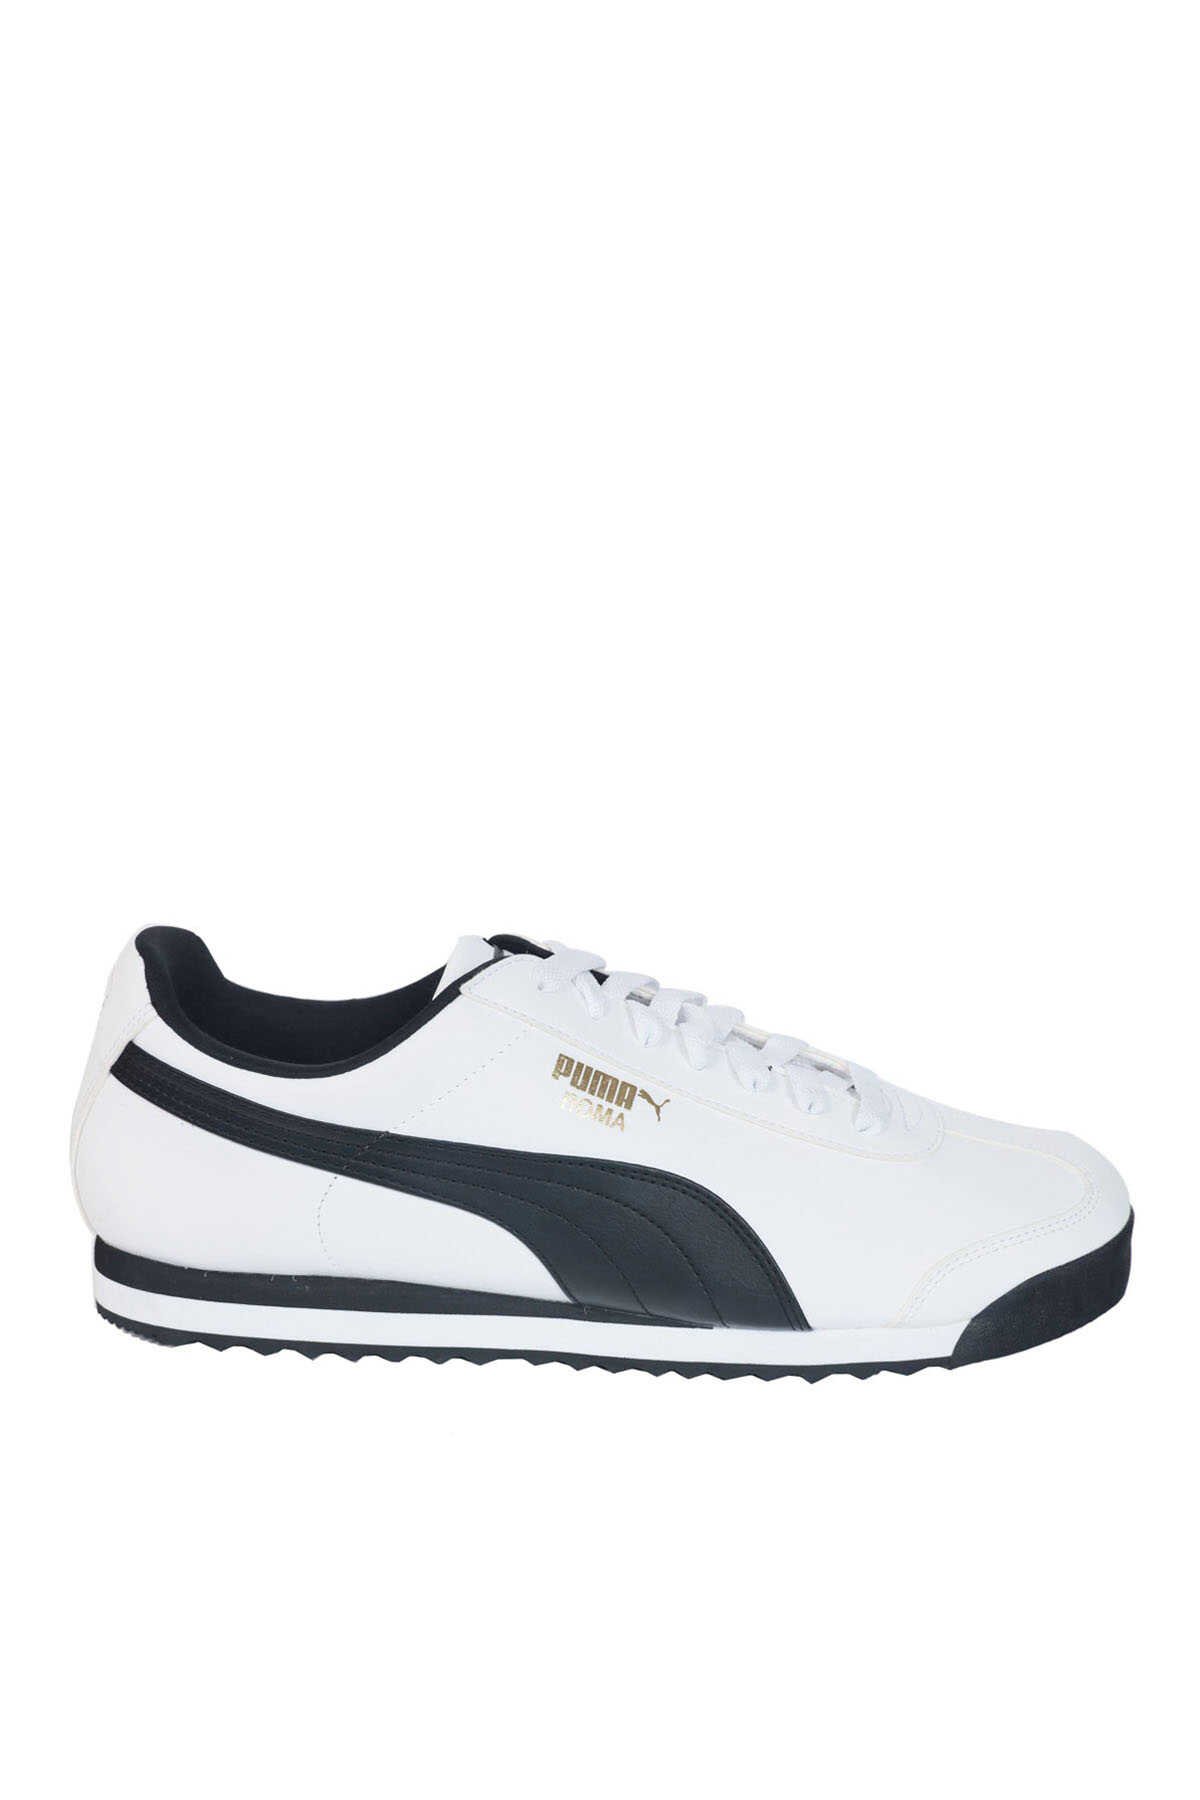 Puma - Puma Roma Basic Erkek Sneaker Ayakkabı Beyaz / Lacivert